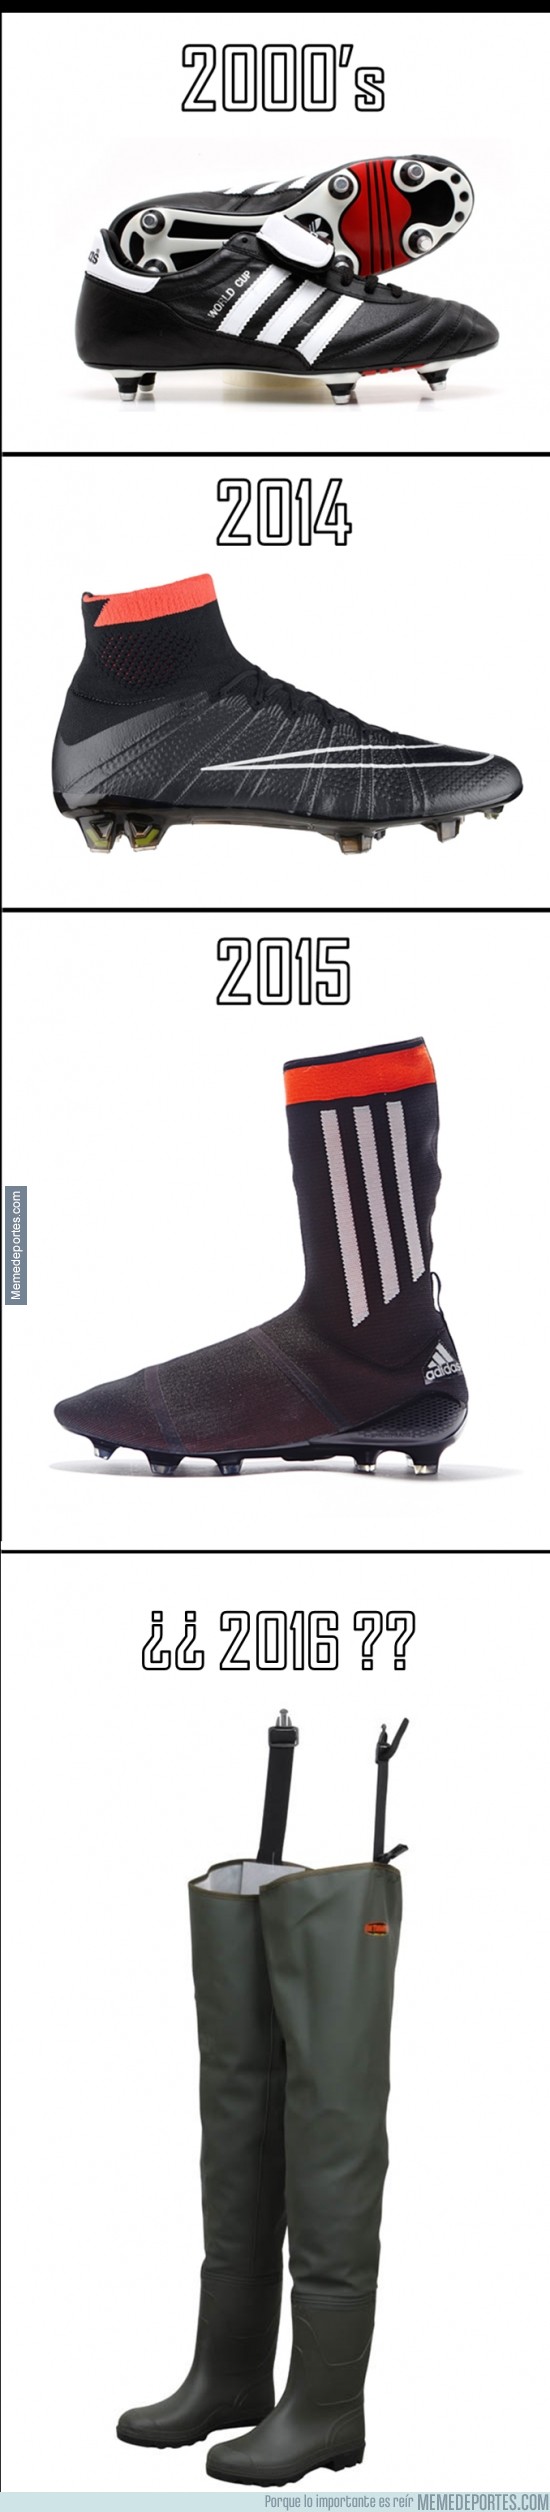 477649 - La evolución de las botas de fútbol